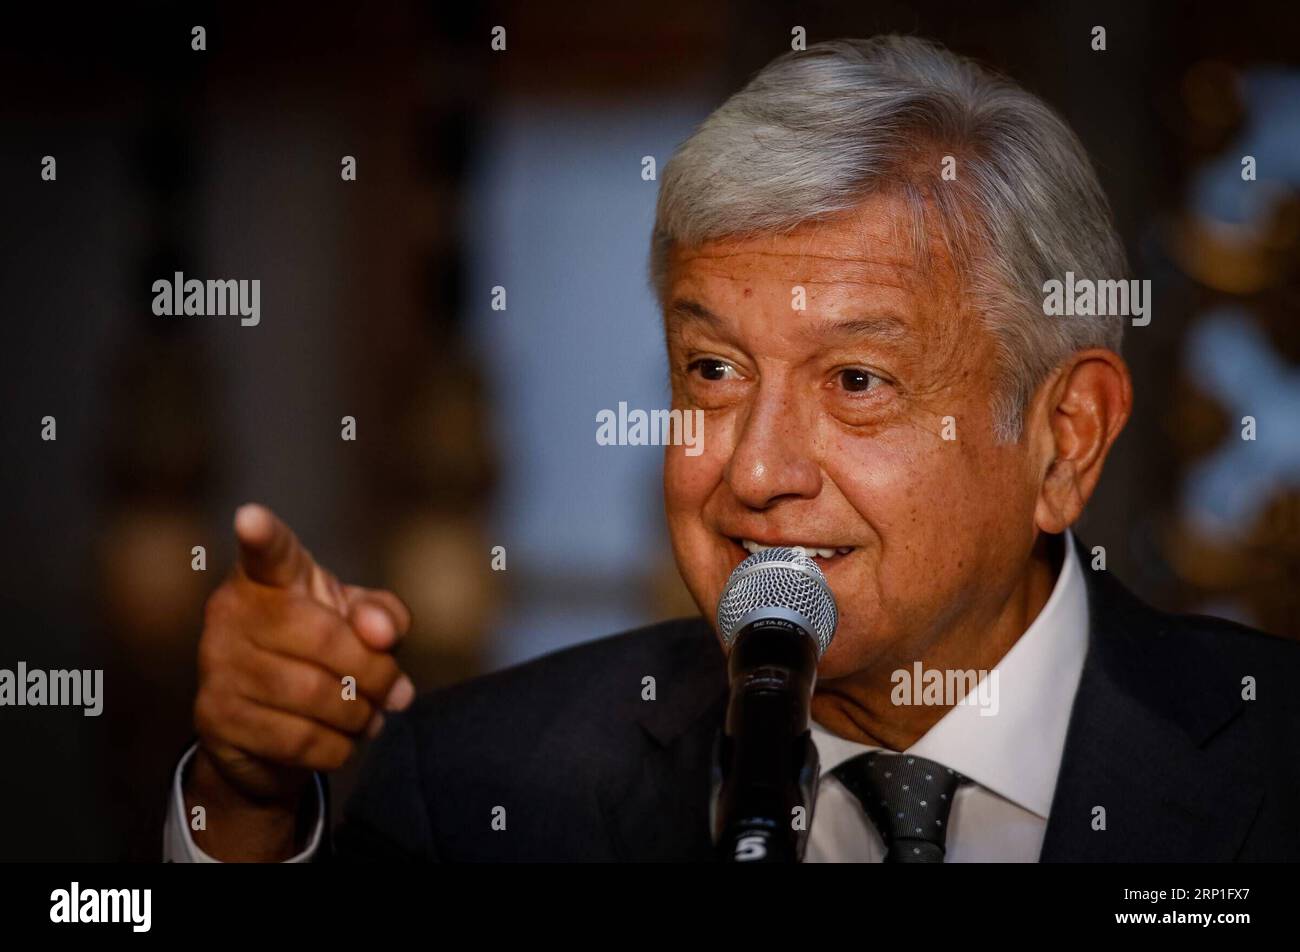 News-Bilder des Tages (180704) -- MEXICO, le 4 juillet 2018 -- le président élu du Mexique, Andres Manuel Lopez Obrador, prononce un discours après sa rencontre avec le président mexicain Enrique Pena Nieto, à Mexico, capitale du Mexique, le 3 juillet 2018. Le président élu du Mexique, Andres Manuel Lopez Obrador, a déclaré mardi qu'il était satisfait de sa rencontre privée avec le président Enrique Pena Nieto. Franciso Canedo) (da) (rtg) (gj) MEXICO-MEXICO CITY-LOPEZ OBRADOR e FranciscoxCa?edo PUBLICATIONxNOTxINxCHN Banque D'Images